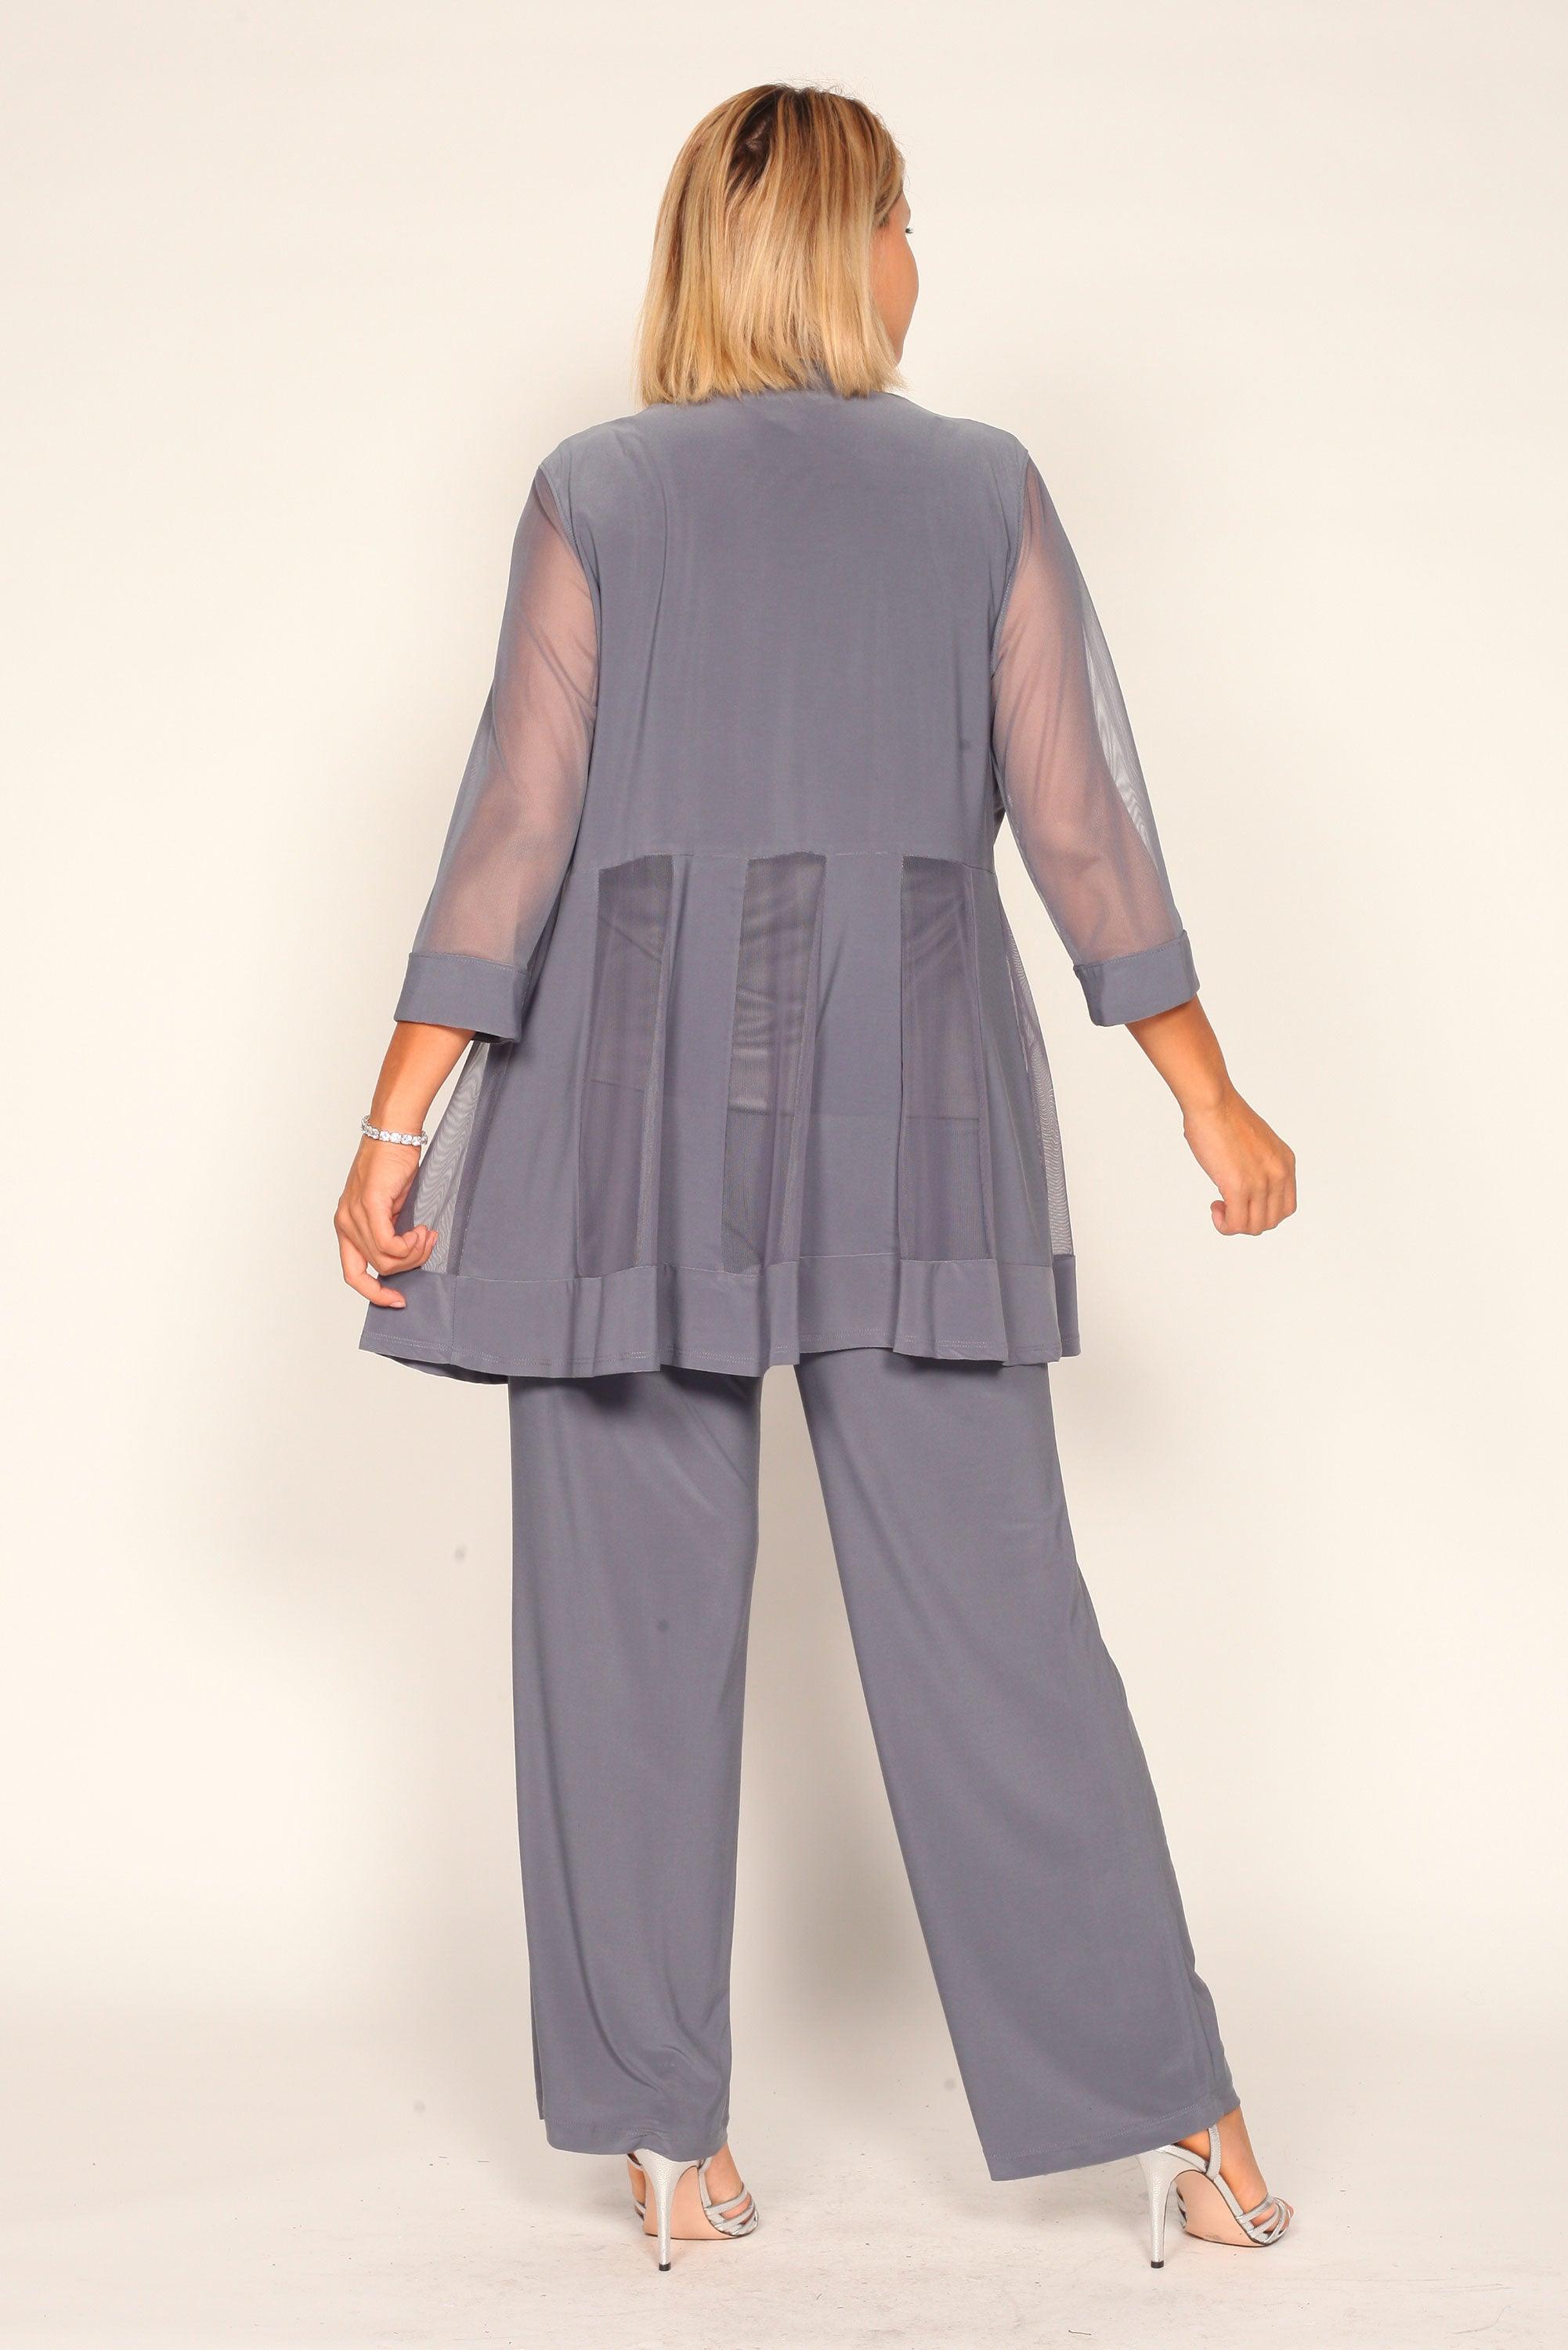 Plus Size Semi Formal Wear Pant Suits Outlet | bellvalefarms.com